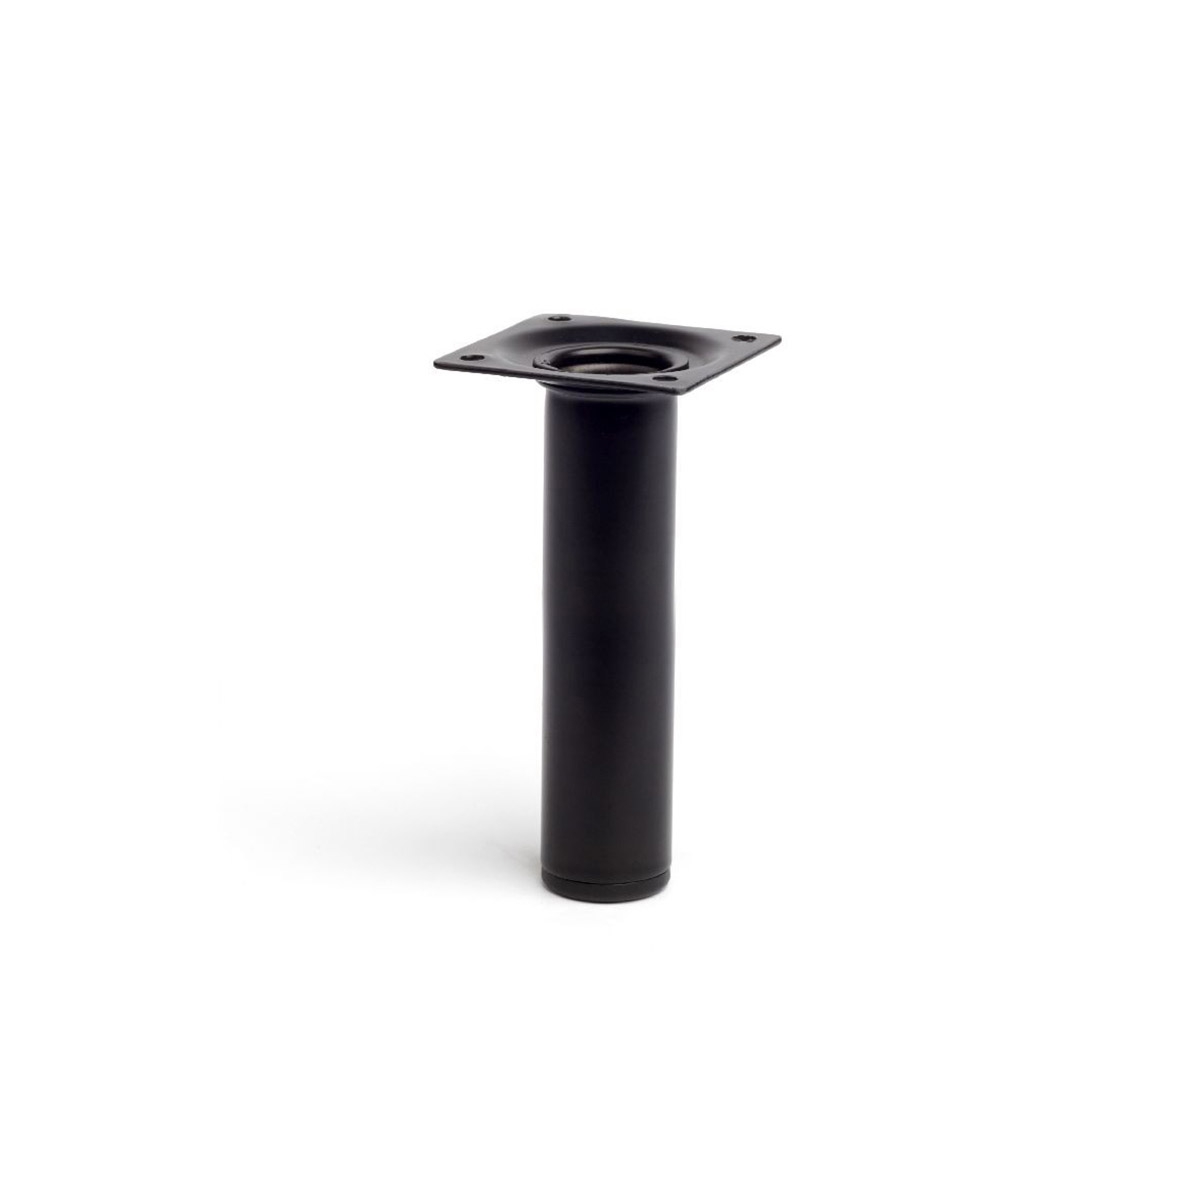 Pata de acero cilíndrica con una altura de 150 mm y acabada en negro. Dimensiones: 30x30x150 mm